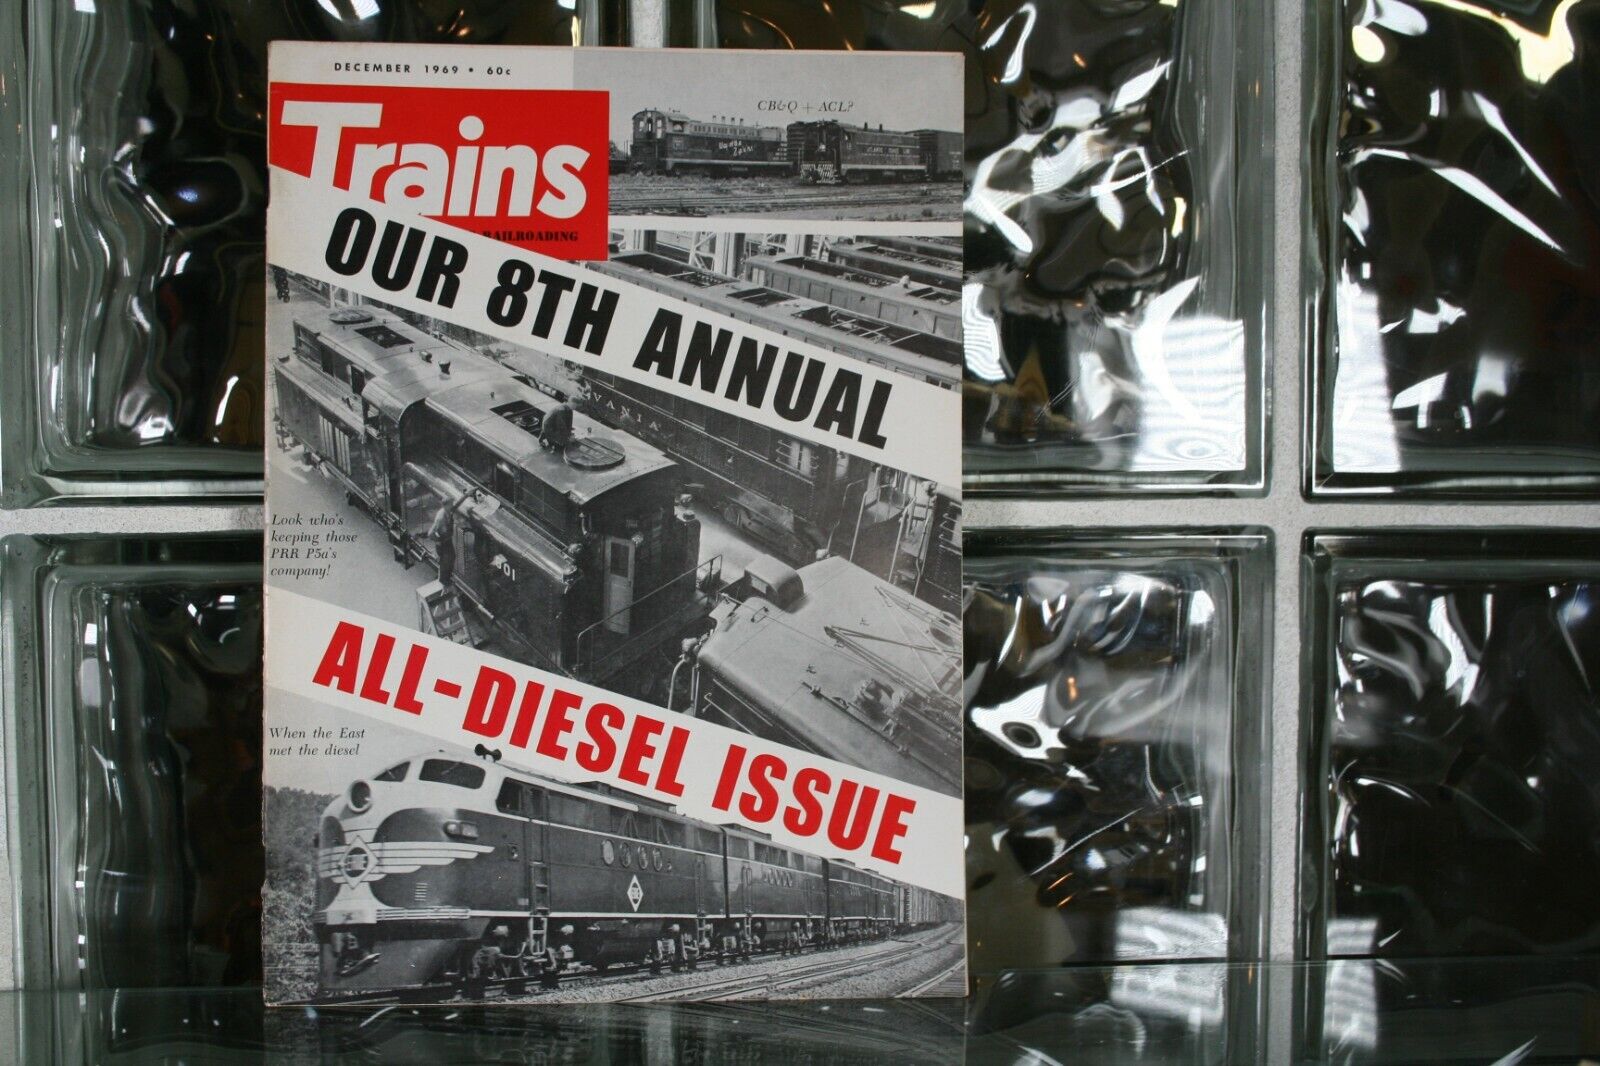 Trains Magazine December 1969 - All Diesel Issue 